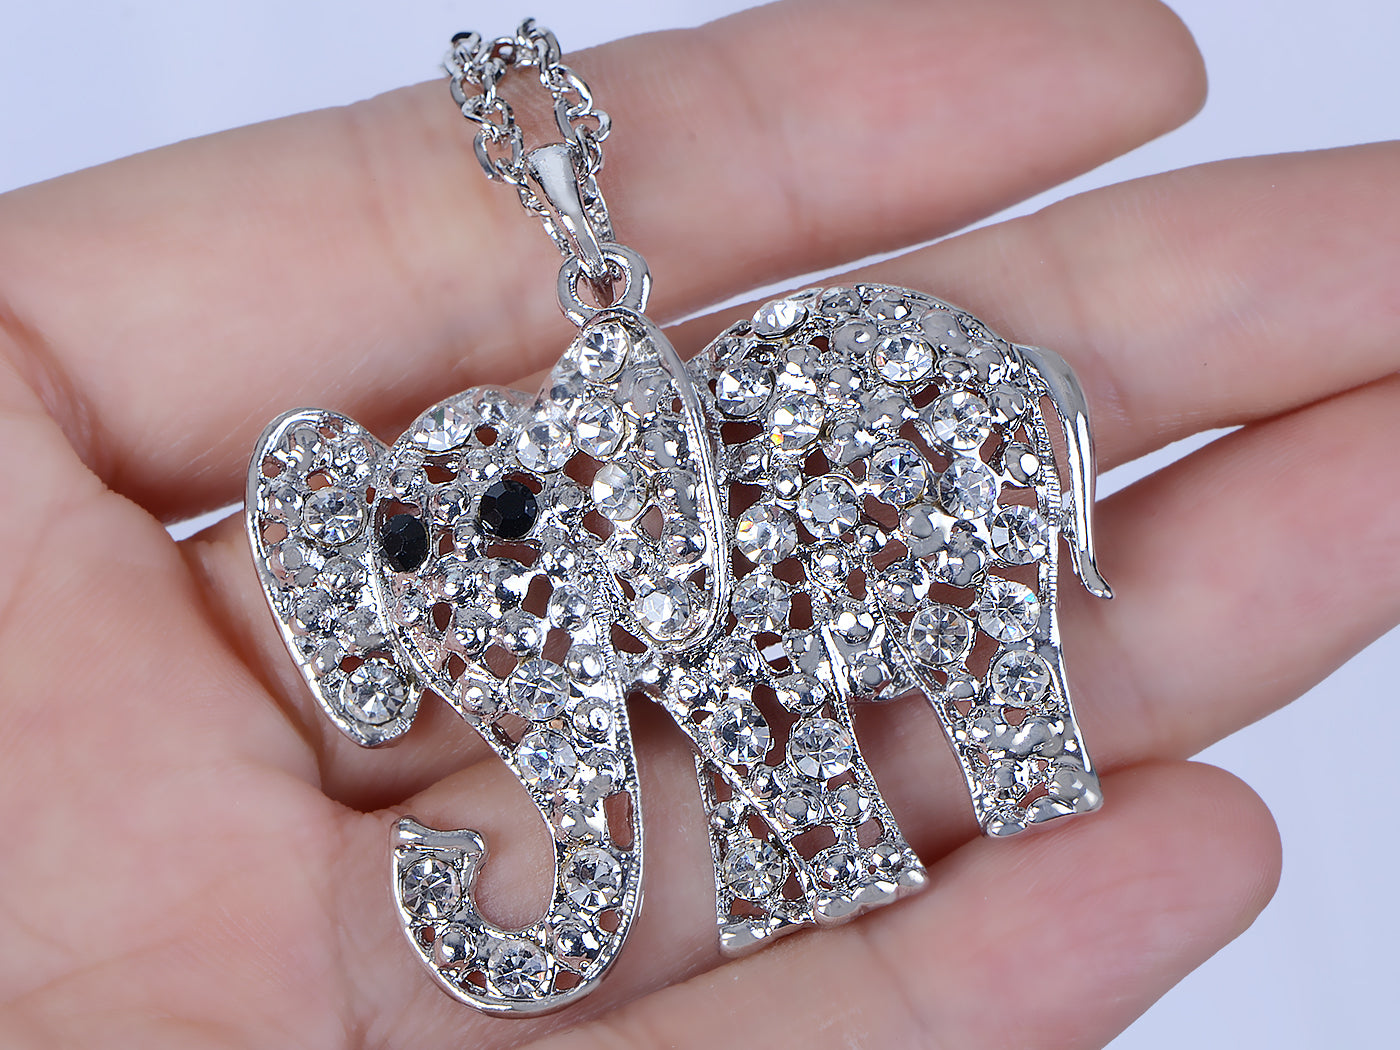 Stunning Elephant Pendant Necklace